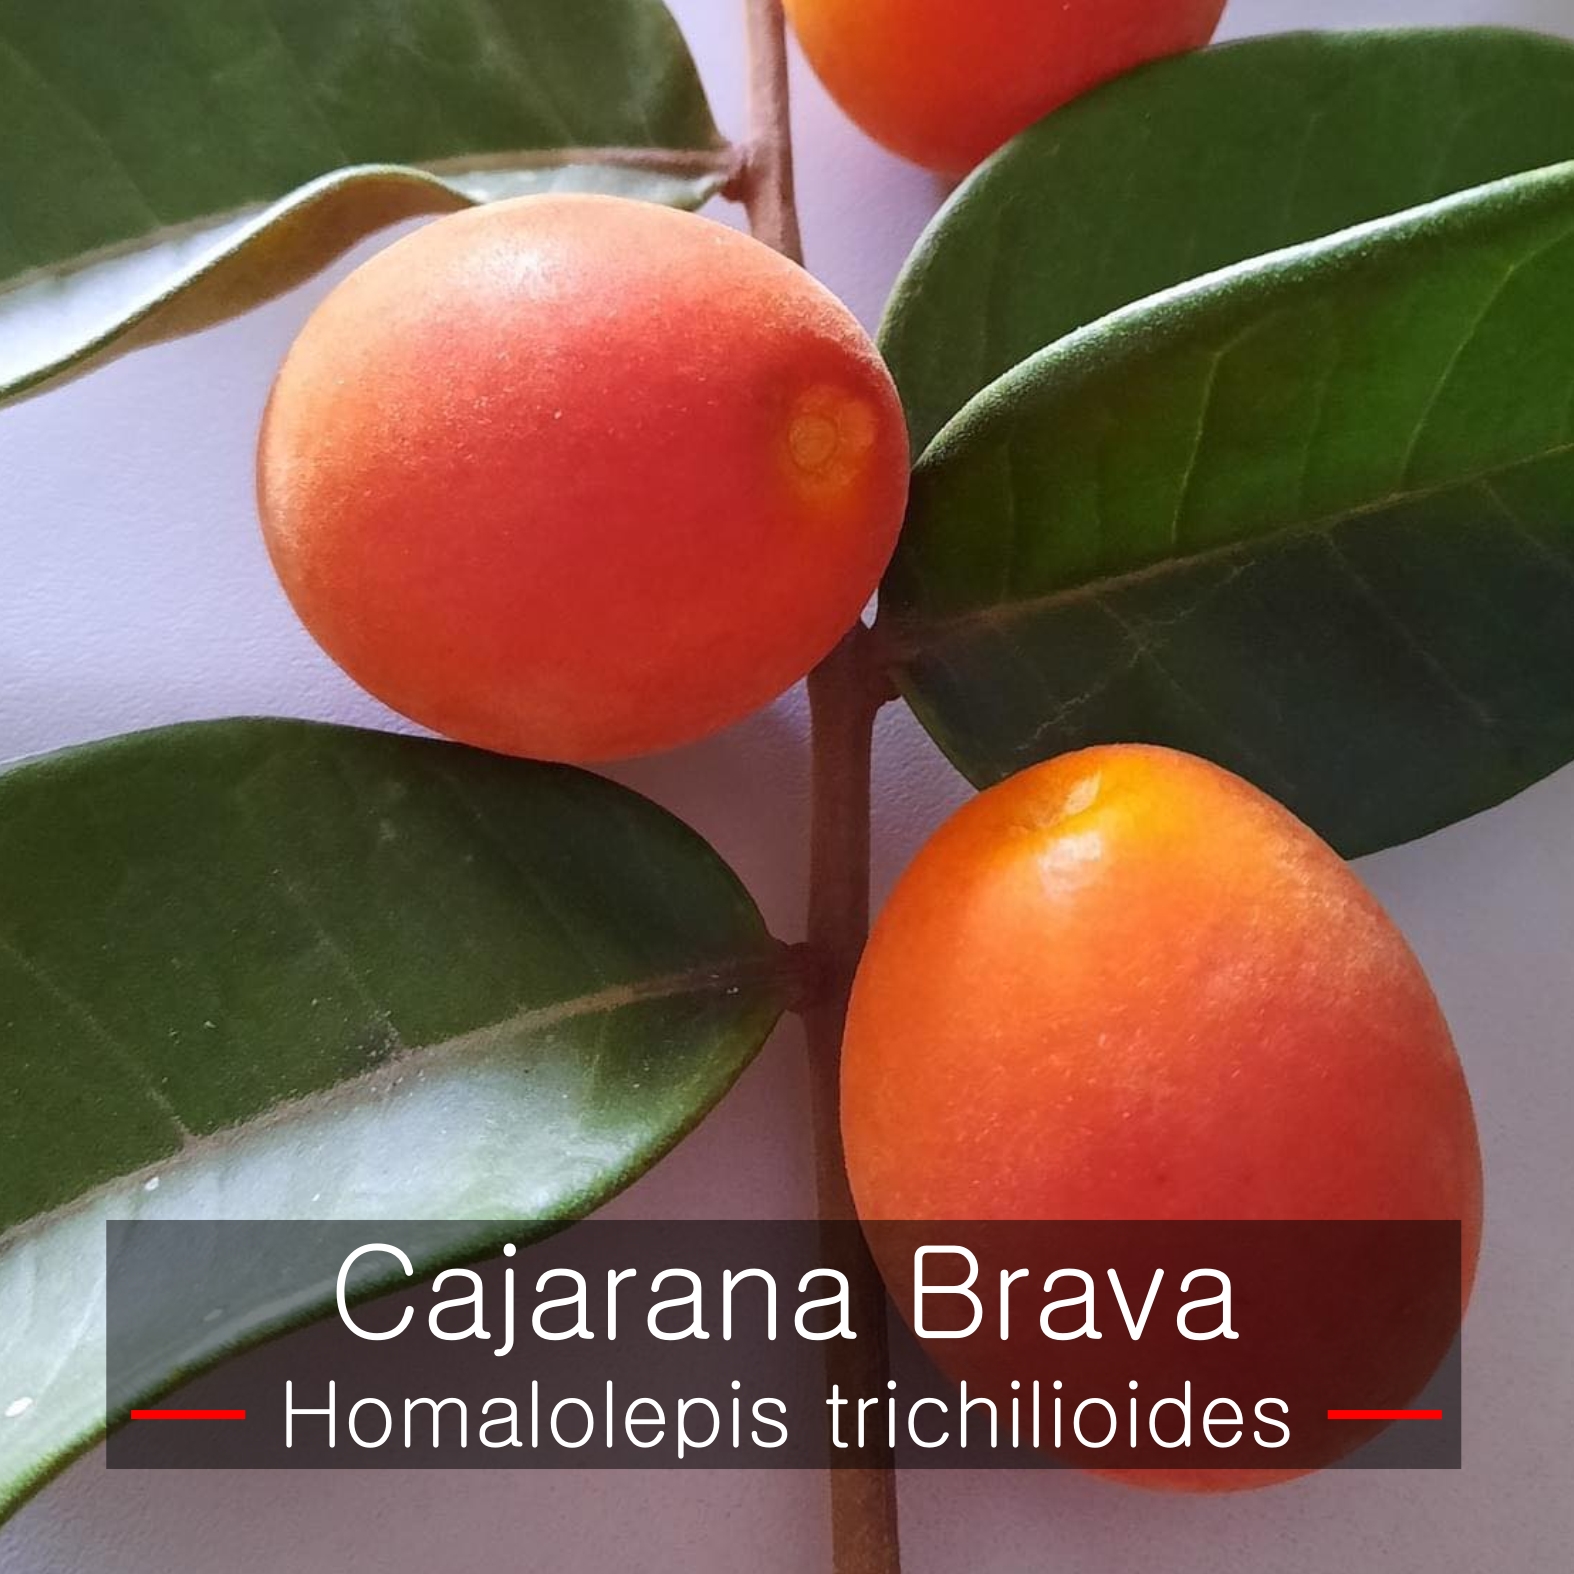 Homalolepis trichilioides - Cajarana Brava - 1 fresh seed / 1 frischer Samen